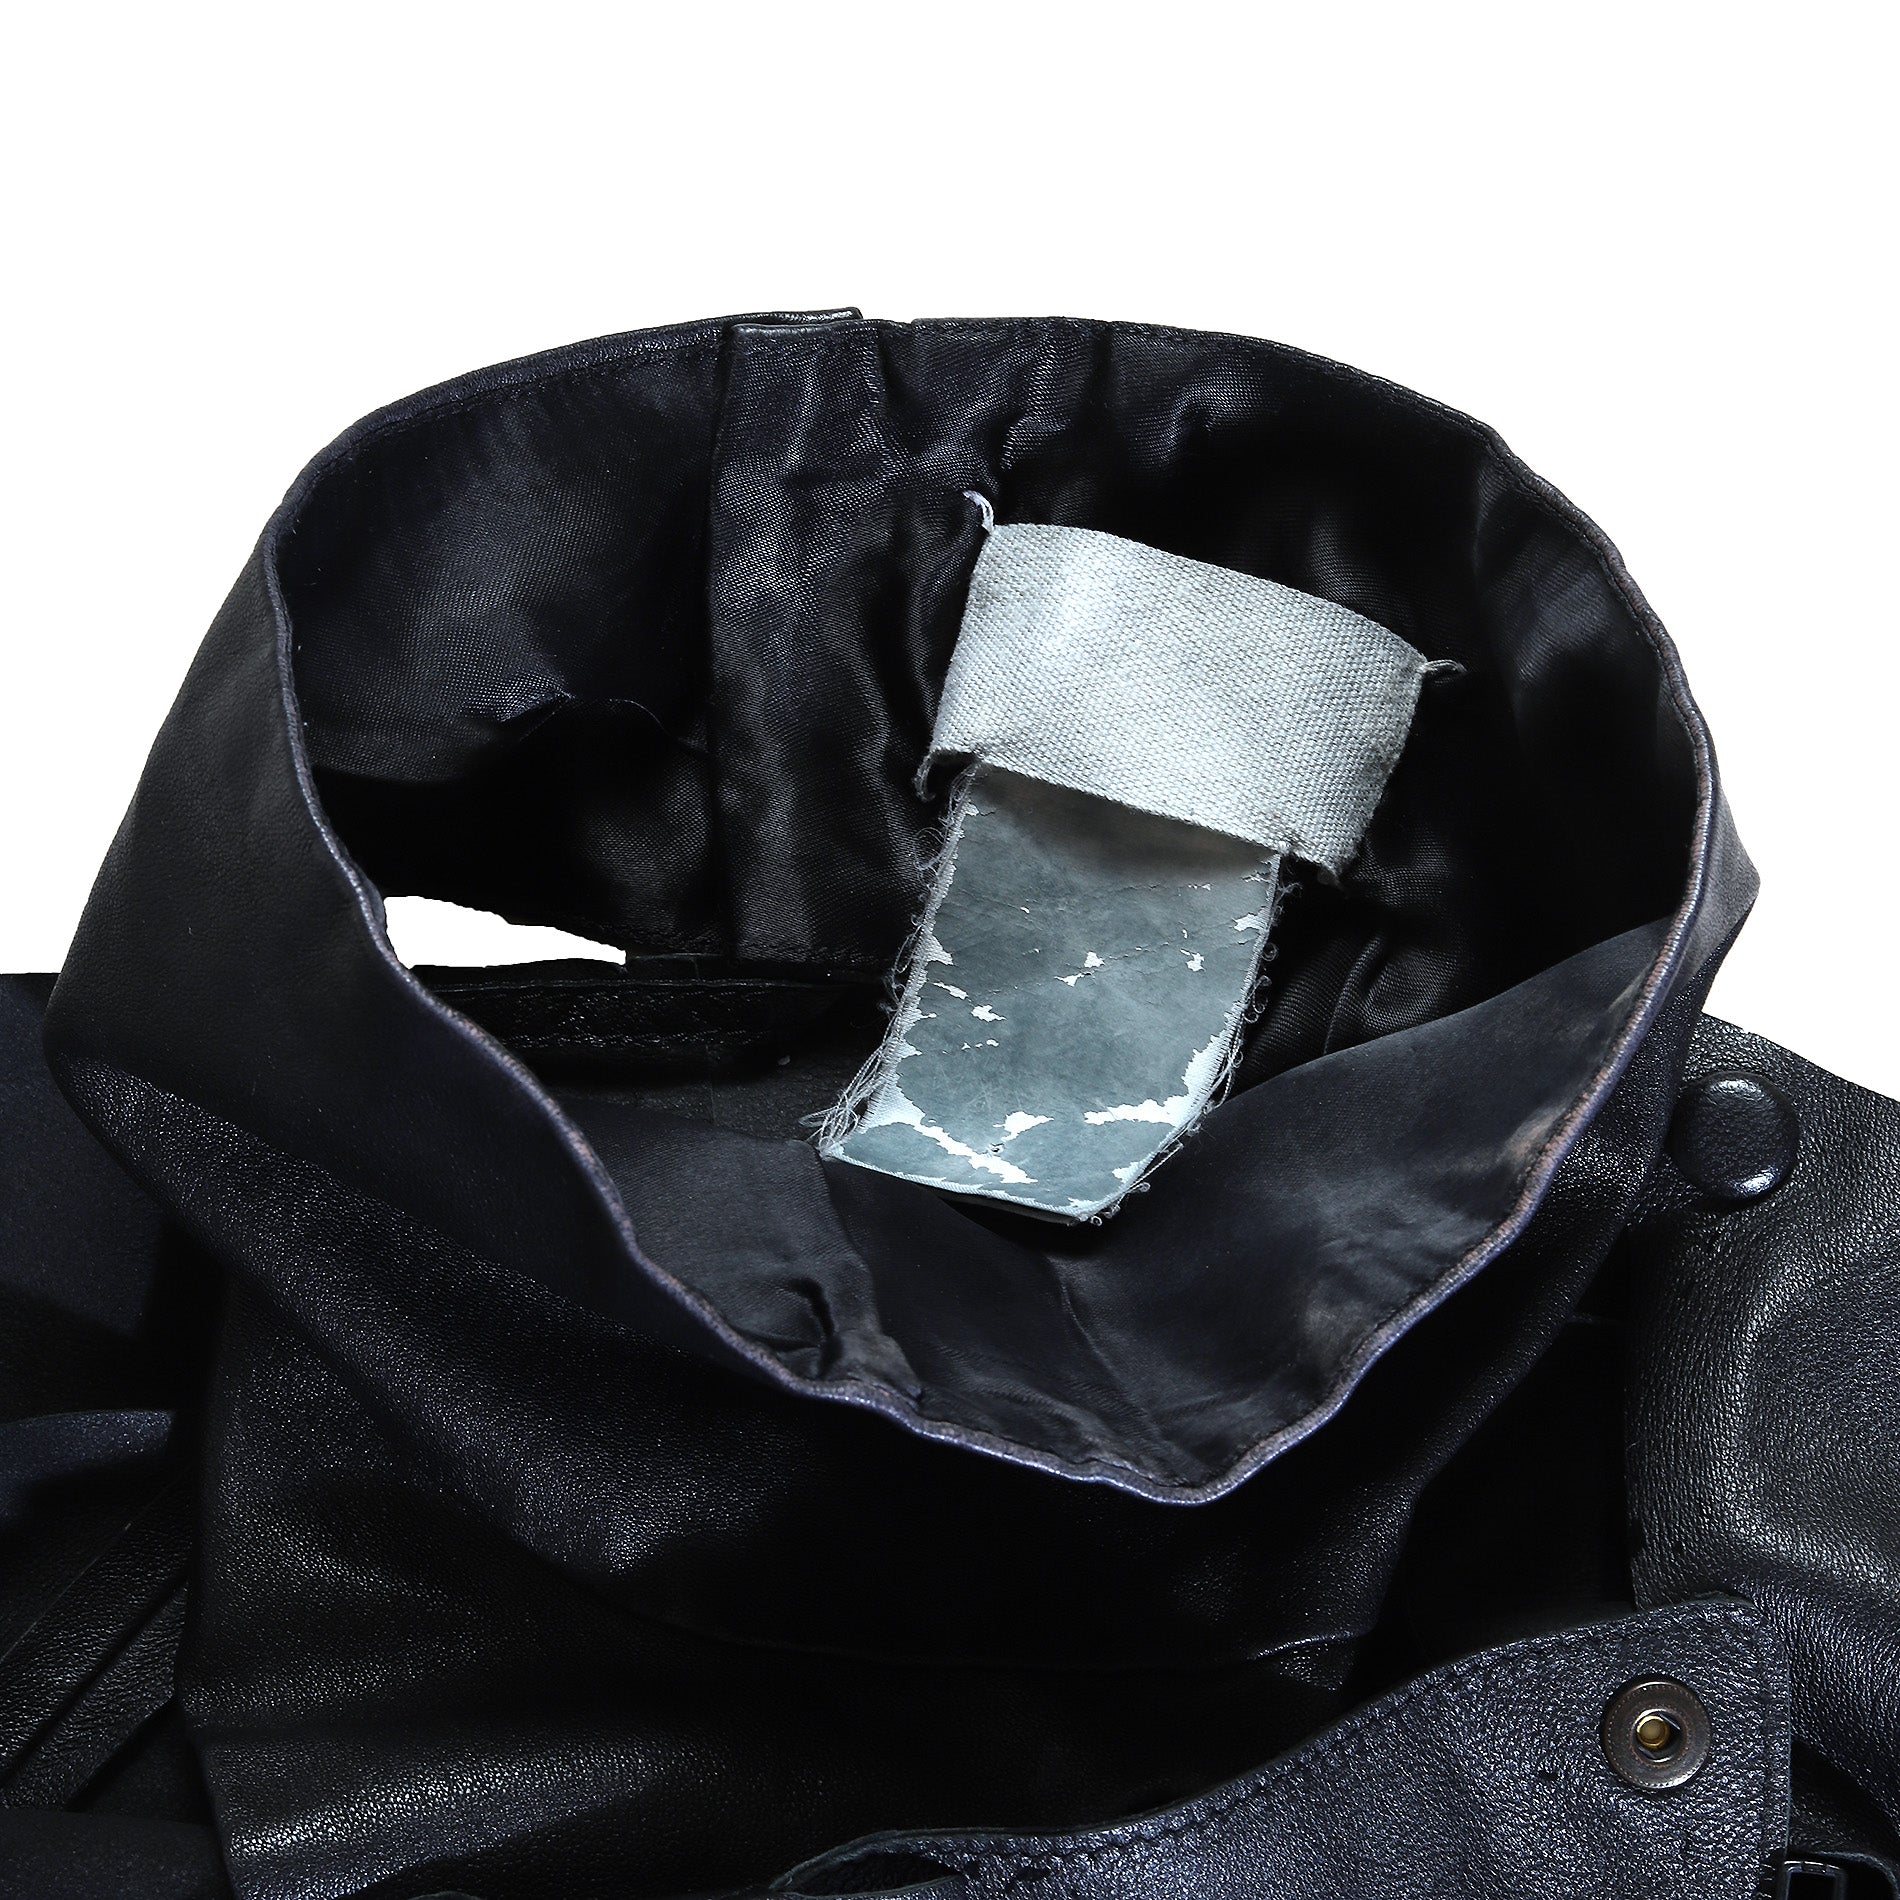 Maison Martin Margiela Reassambled 3 Piece Black Leather Jacket